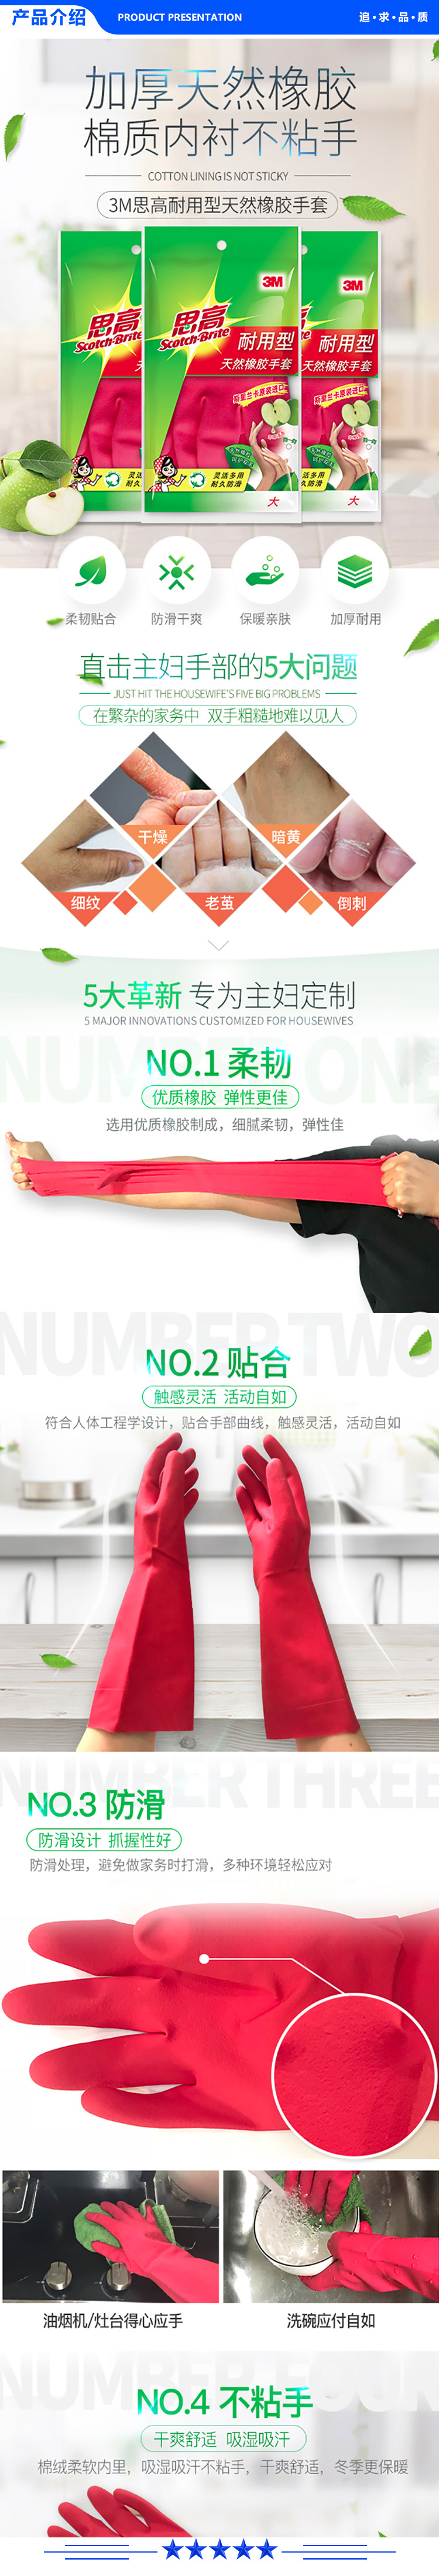 3M 橡胶手套 耐用型防水防滑家务清洁手套 柔韧加厚手套大号 苹果红.jpg